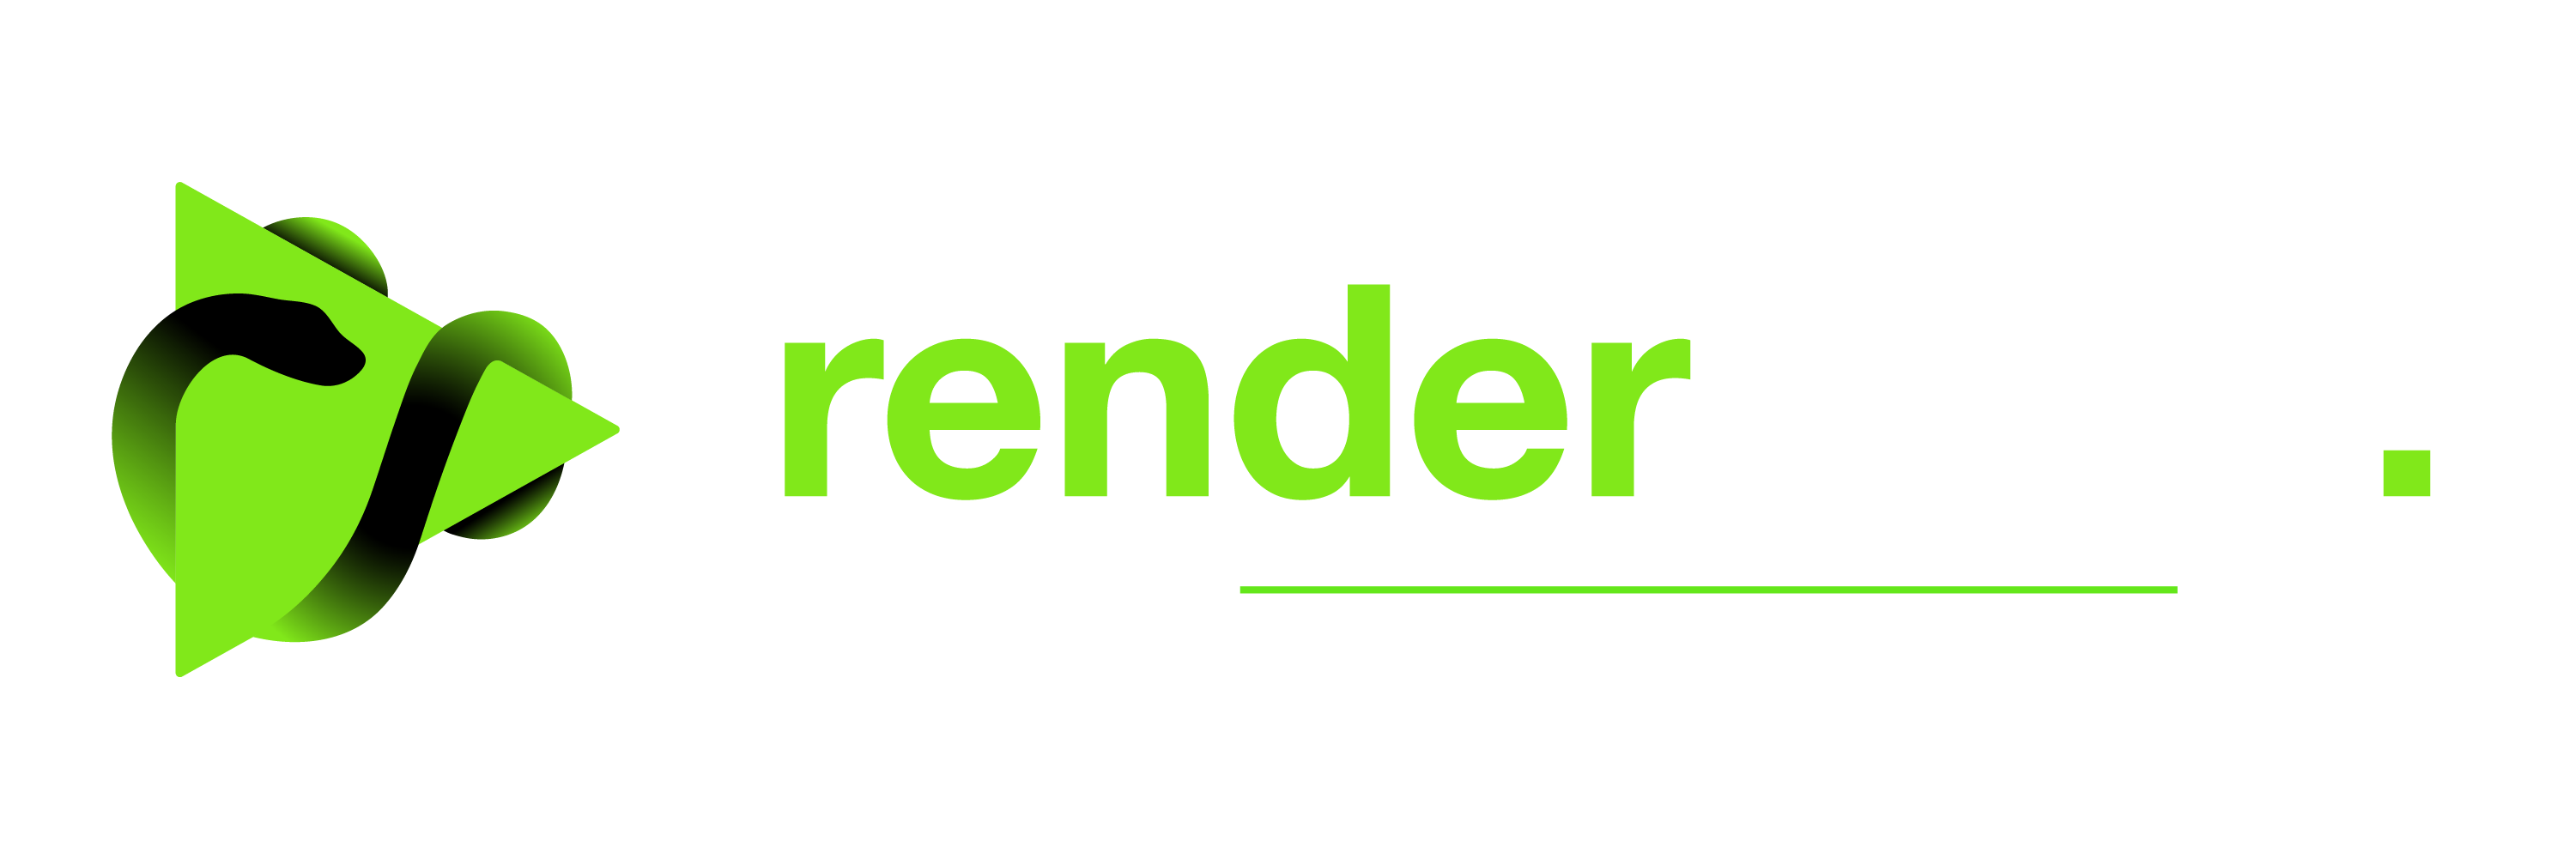 rendernsek logo incl slogan